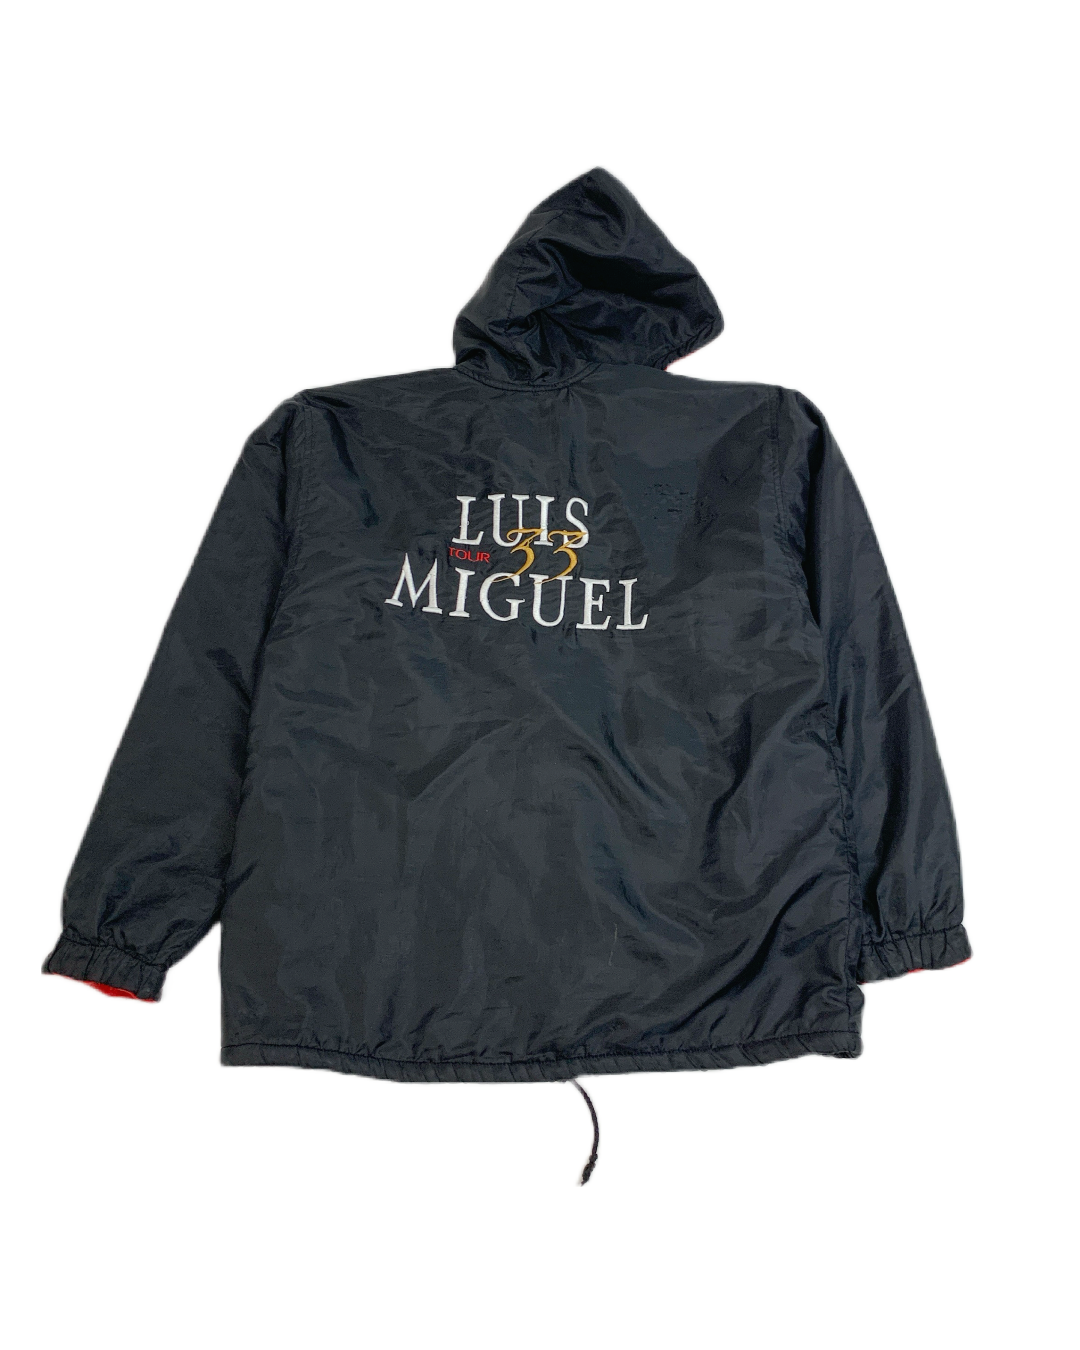 Luis Miguel On Tour 33 2004 Vintage Jacket (Doble Vista) - L